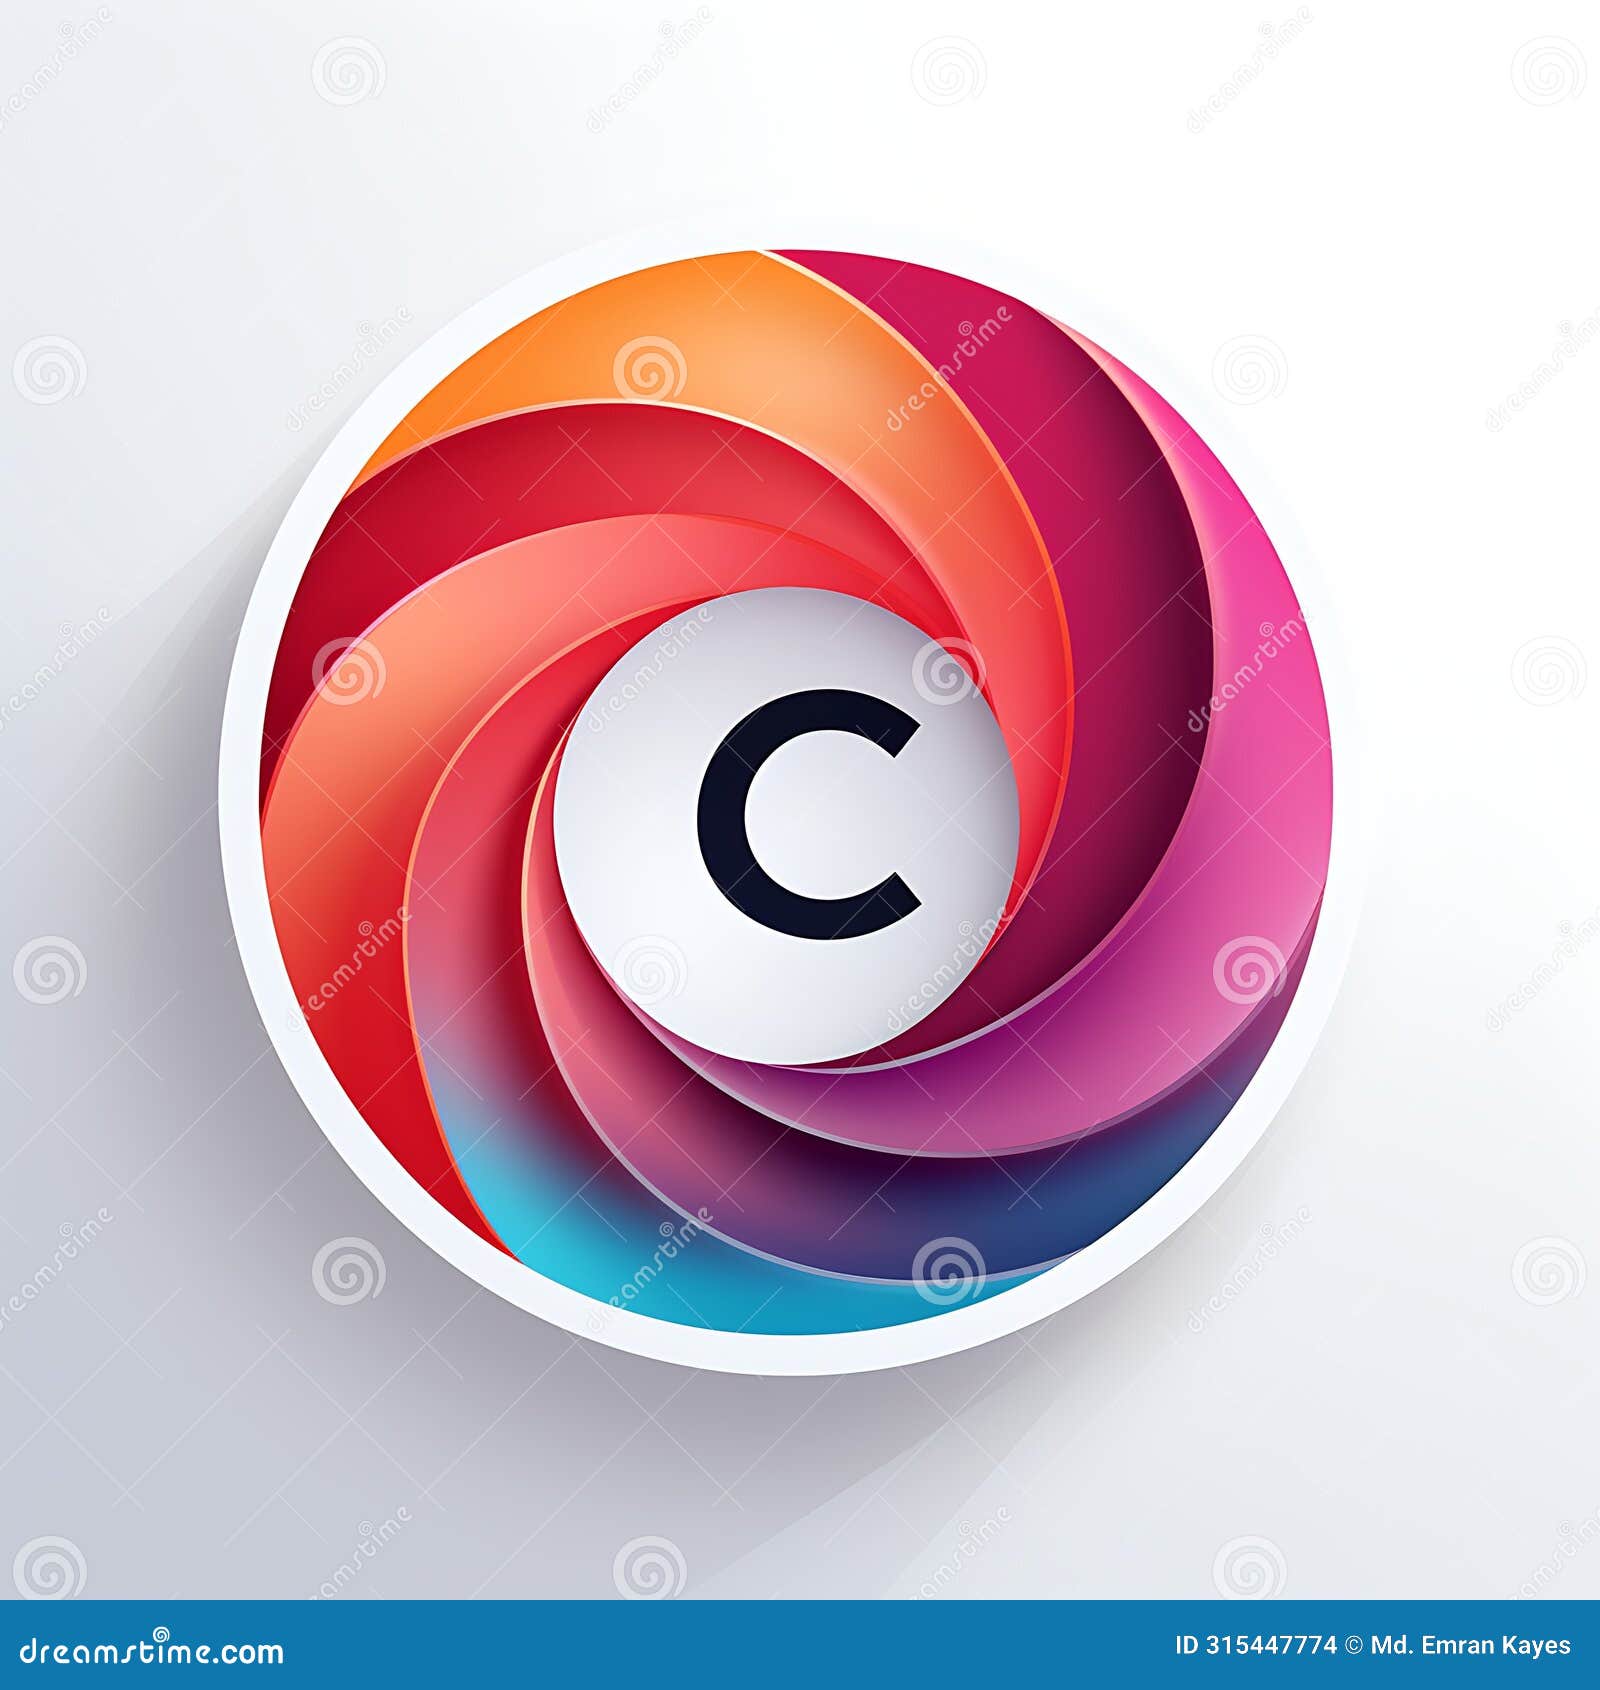 lettermark of letter c, company logo